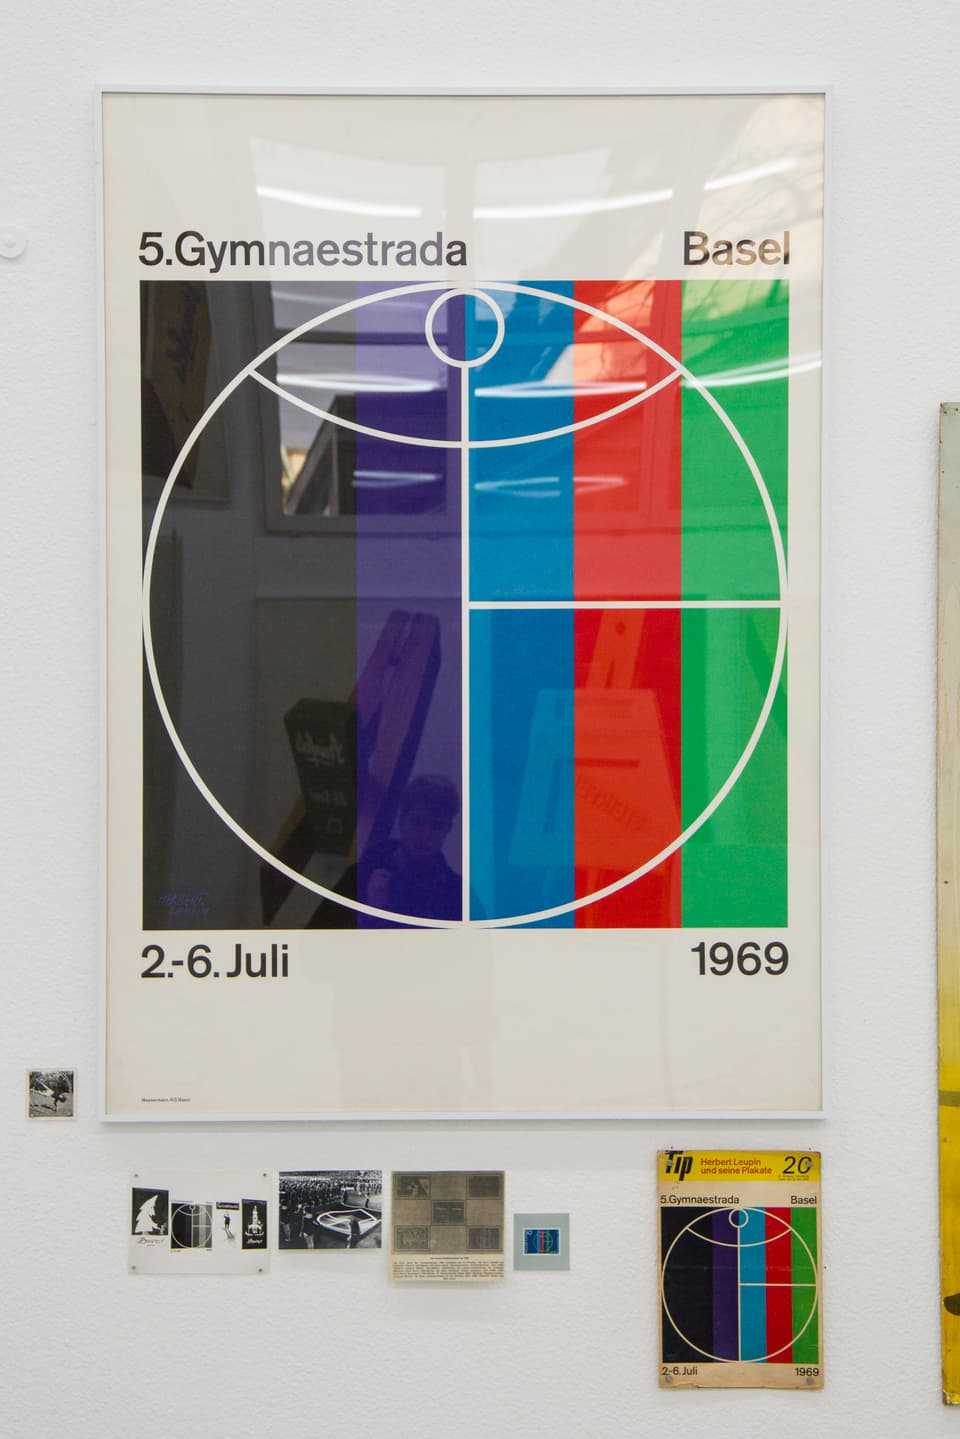 Ein Plakat zeigt ein Strichmännchen in einem Kreis, dahinter sind verschiedene Farbstreifen zu erkennen.